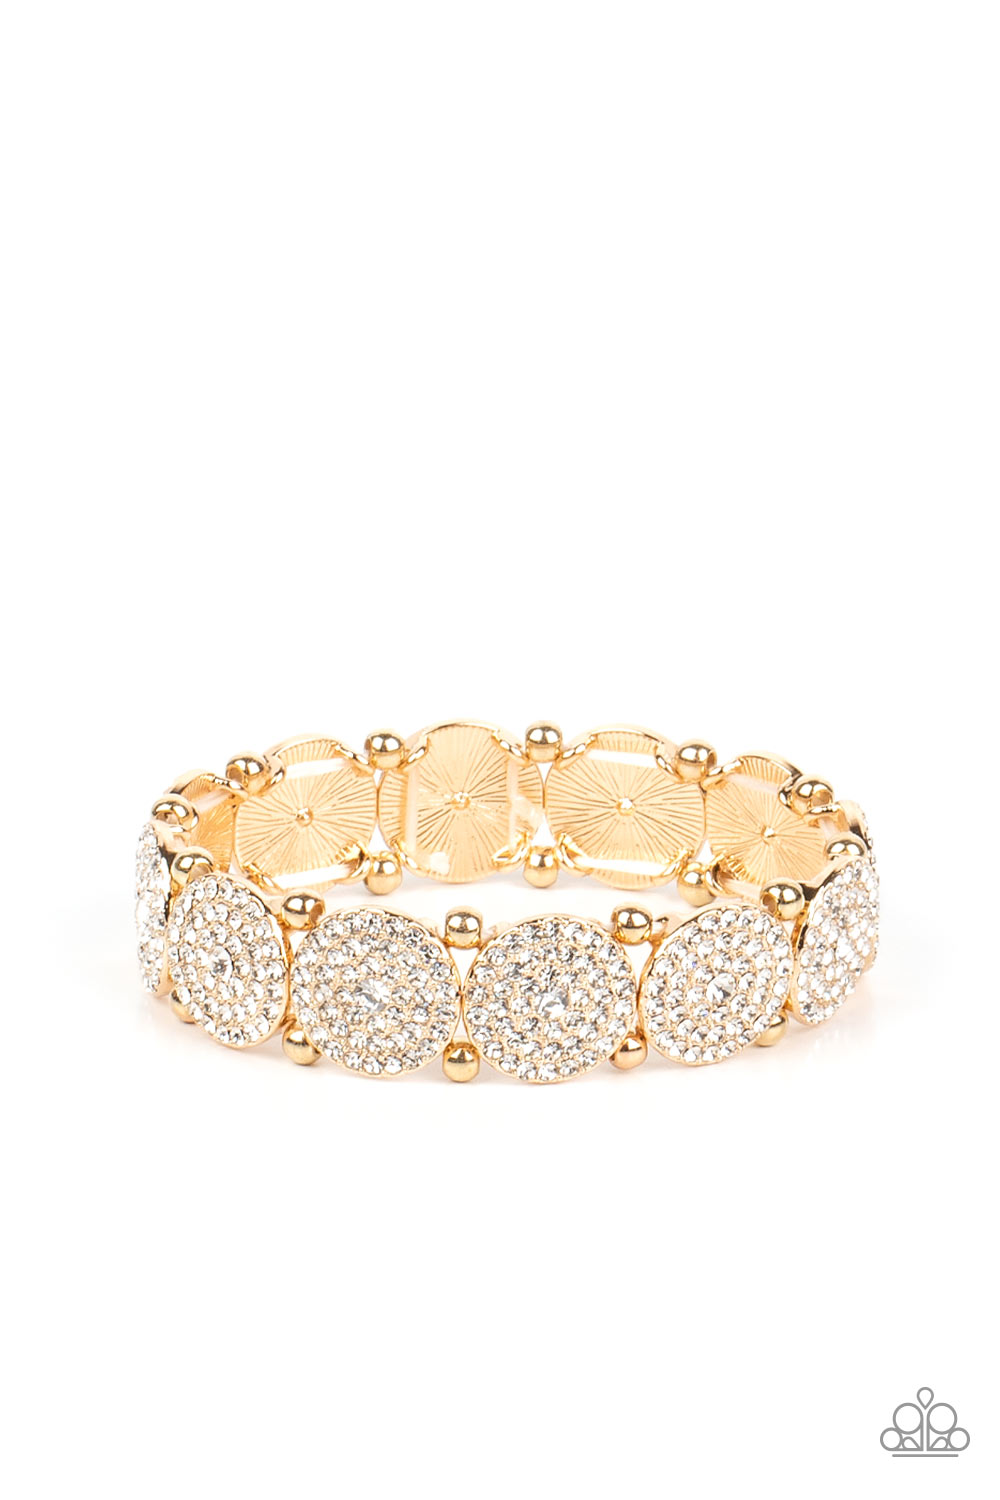 Palace Intrigue - gold - Paparazzi bracelet